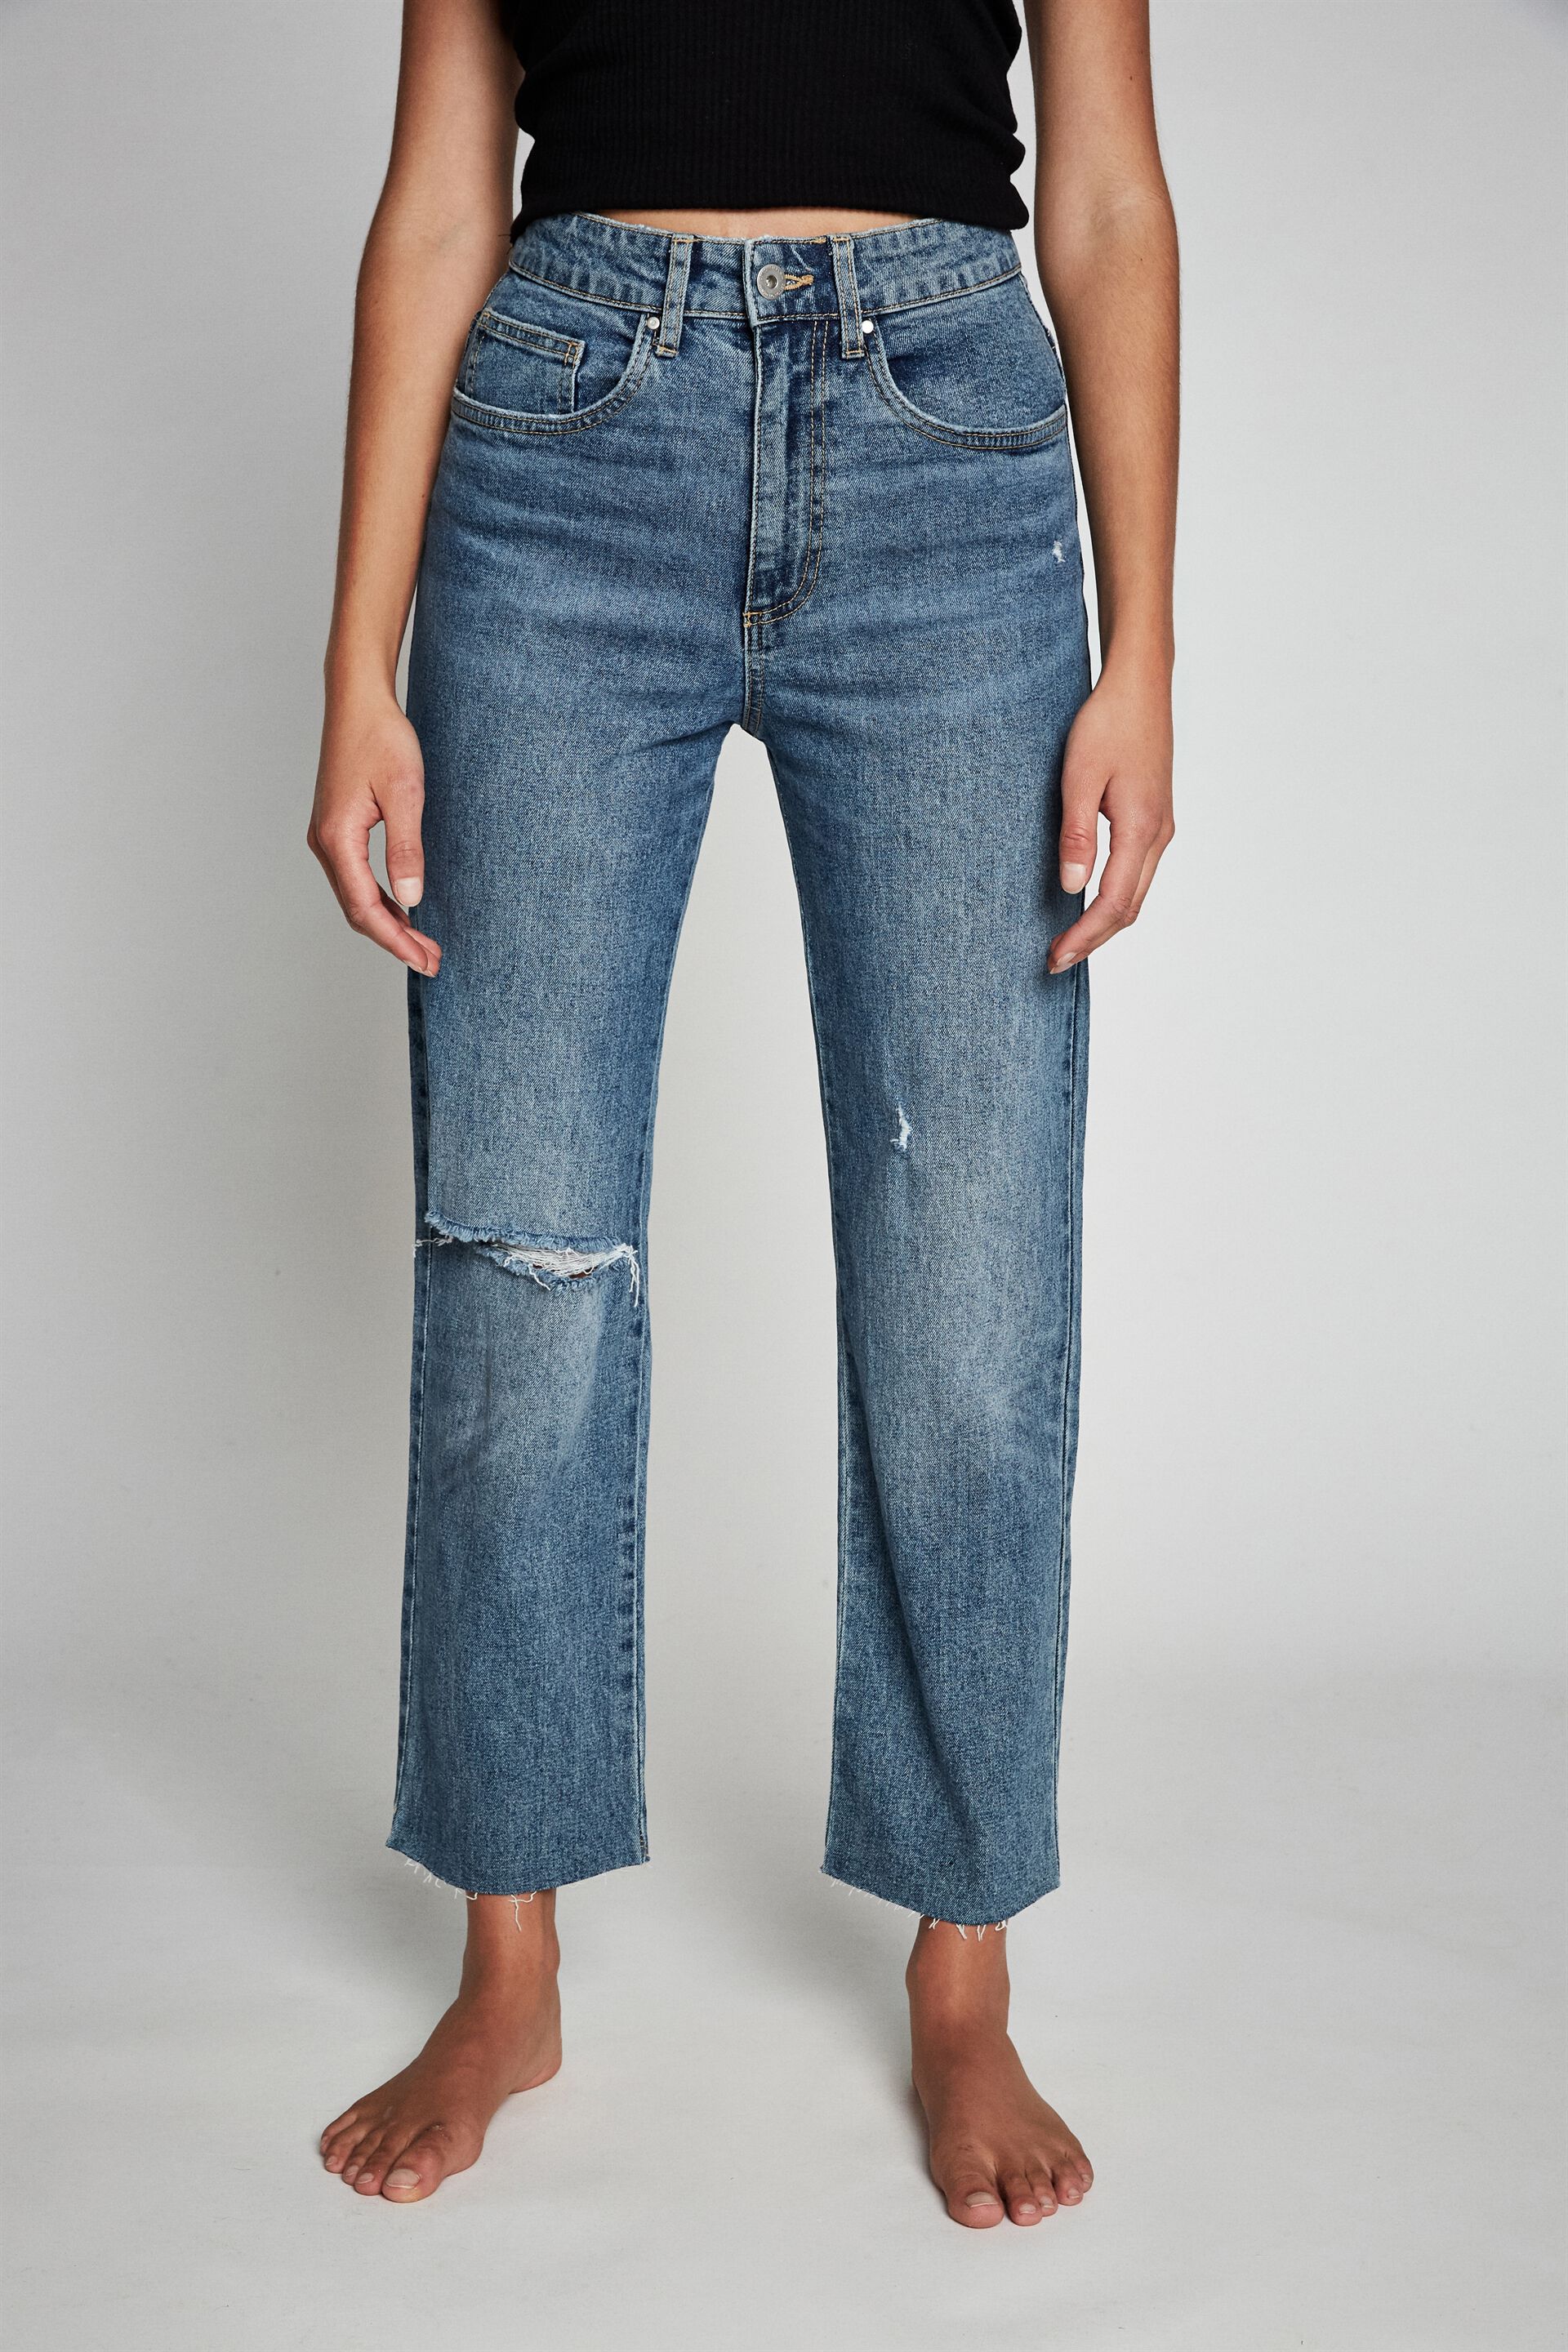 cotton on jeans sale